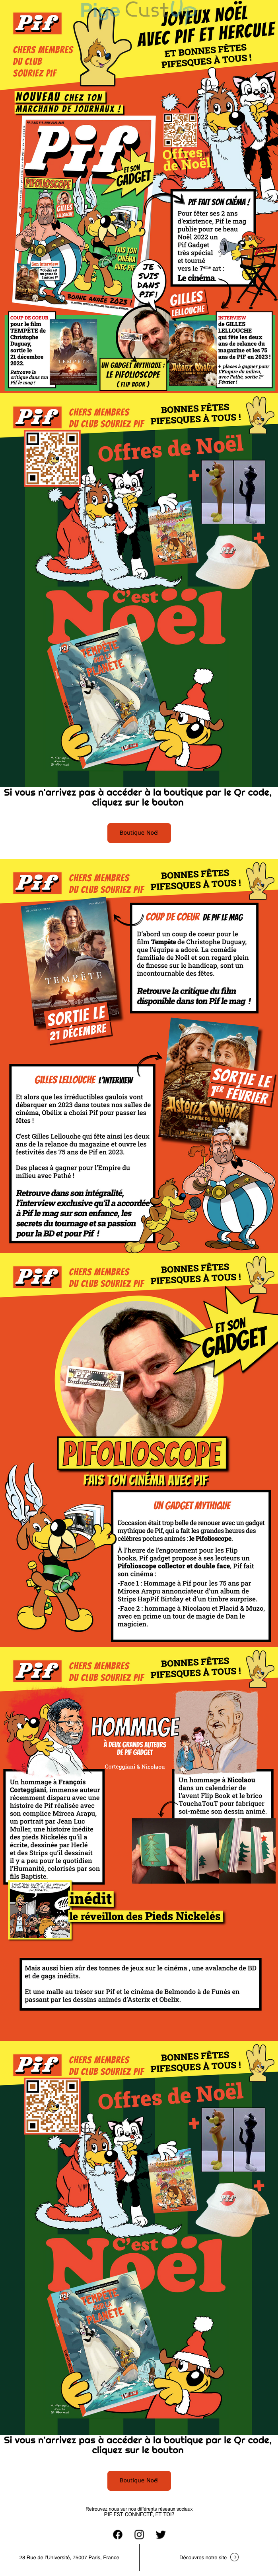 Exemple de Type de media  e-mailing - Pif Magazine - Marketing Acquisition - Acquisition abonnements - Marketing relationnel - Calendaire (Noël, St valentin, Vœux, …)